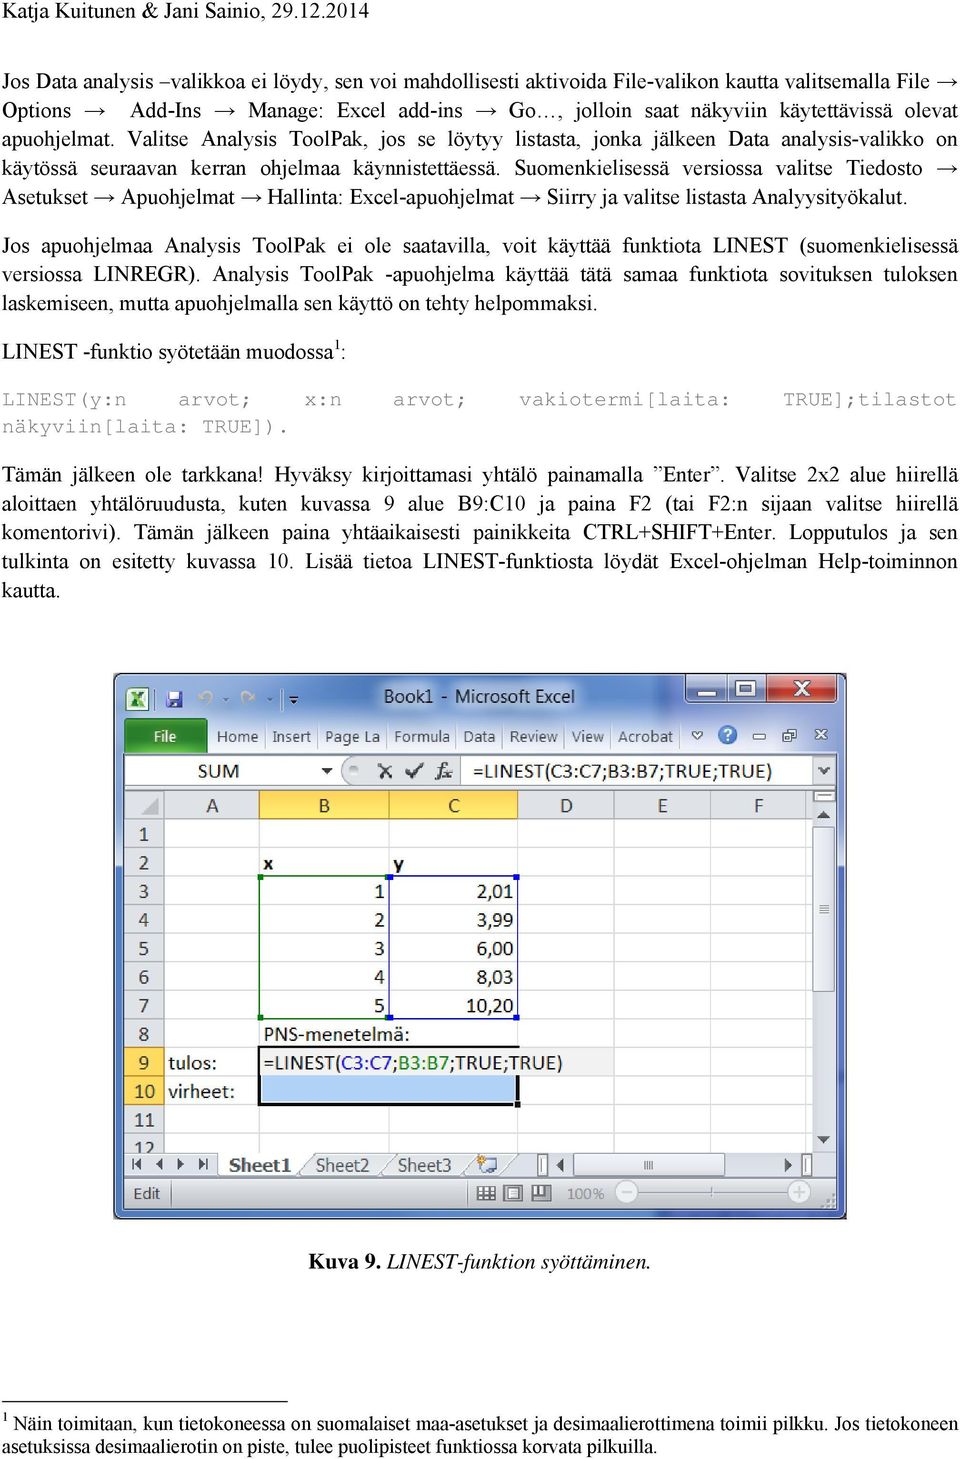 Suomenkielisessä versiossa valitse Tiedosto Asetukset Apuohjelmat Hallinta: Excel-apuohjelmat Siirry ja valitse listasta Analyysityökalut.